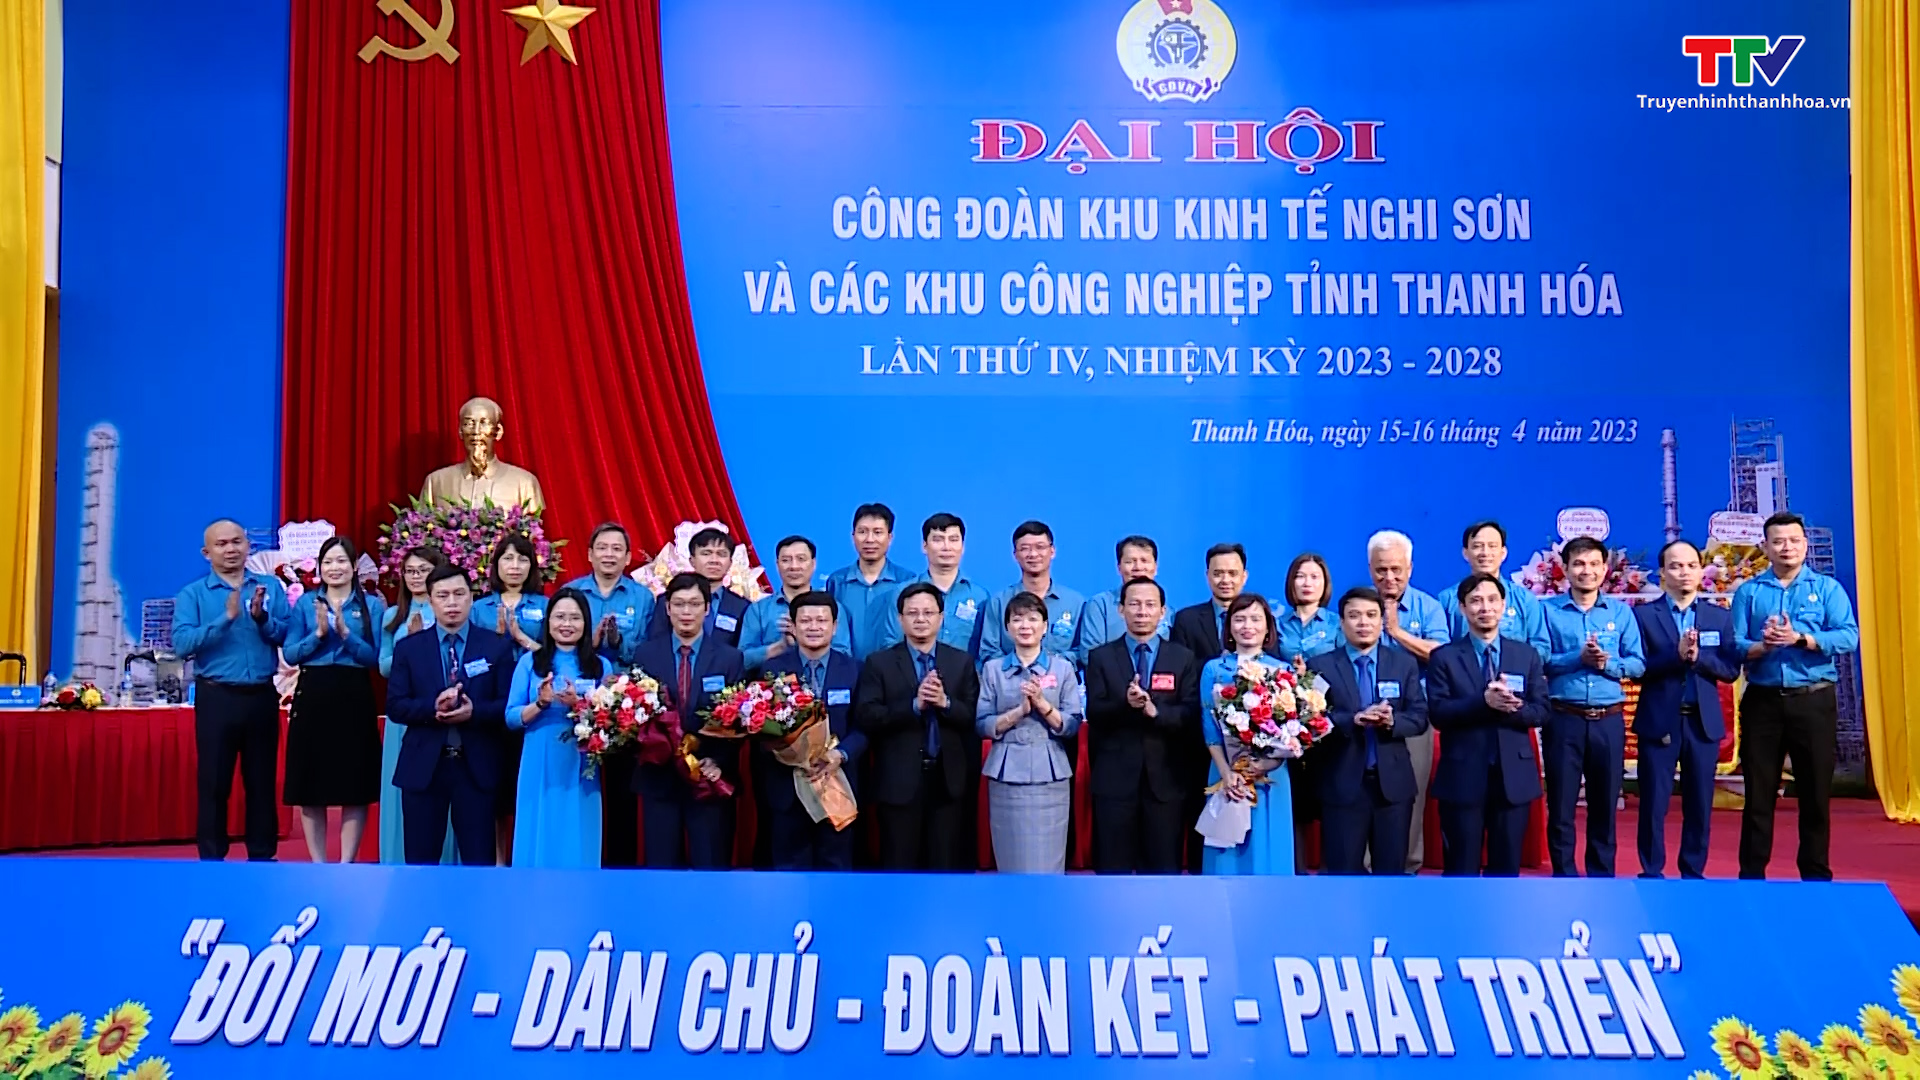 Đại hội Công đoàn Khu kinh tế Nghi Sơn và các Khu công nghiệp tỉnh Thanh Hóa lần thứ IV, nhiệm kỳ 2023-2028 - Ảnh 4.